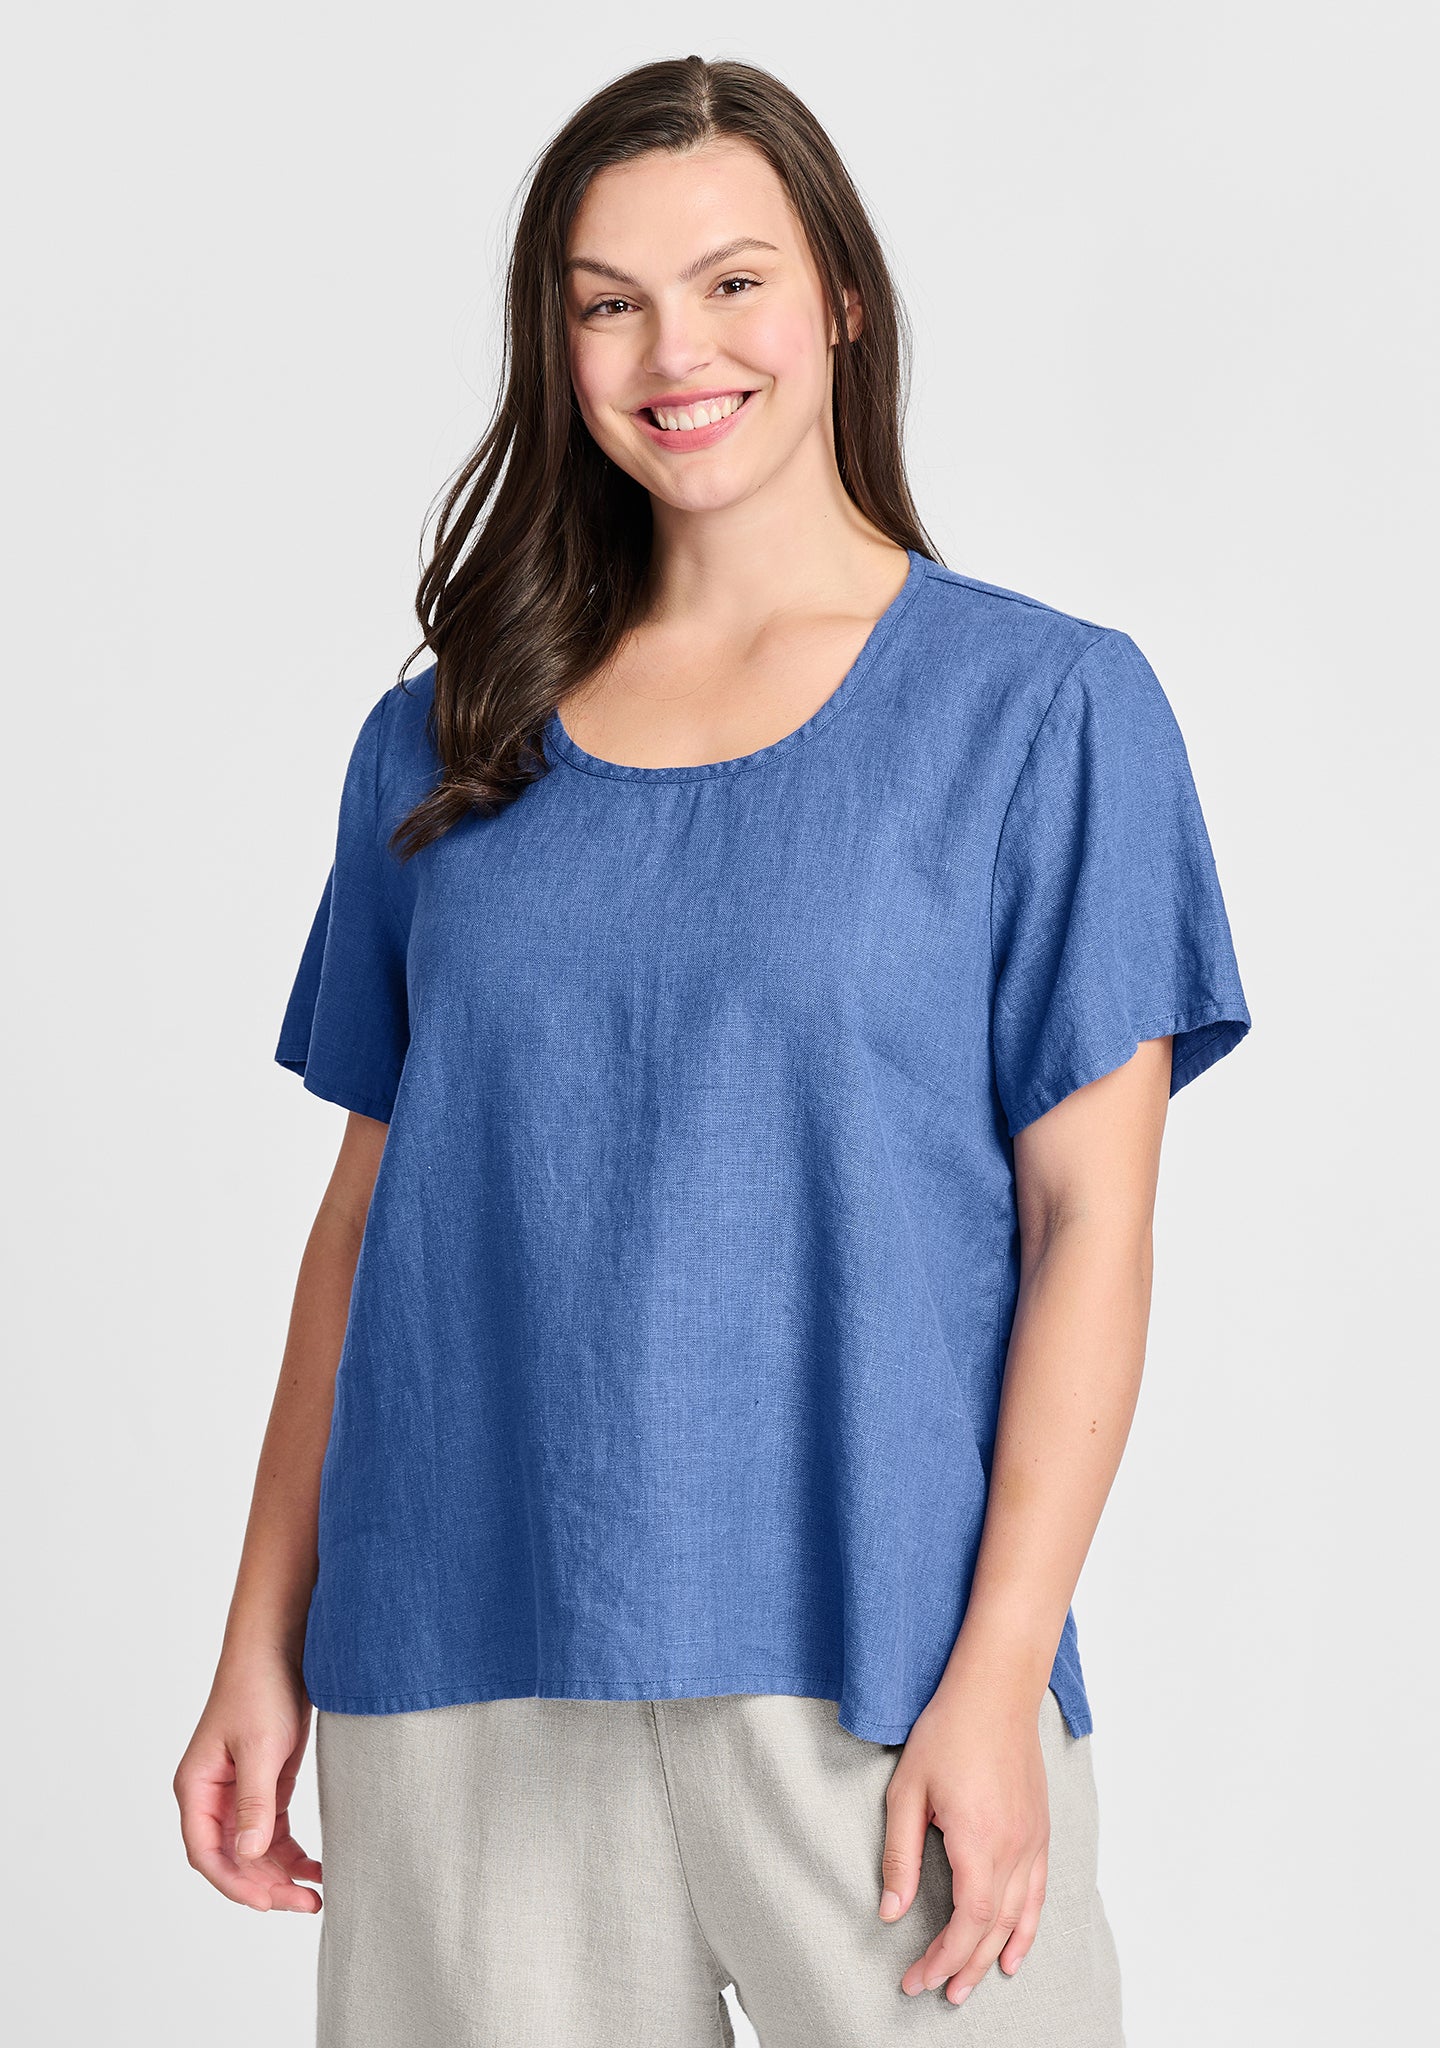 fundamental tee linen t shirt blue